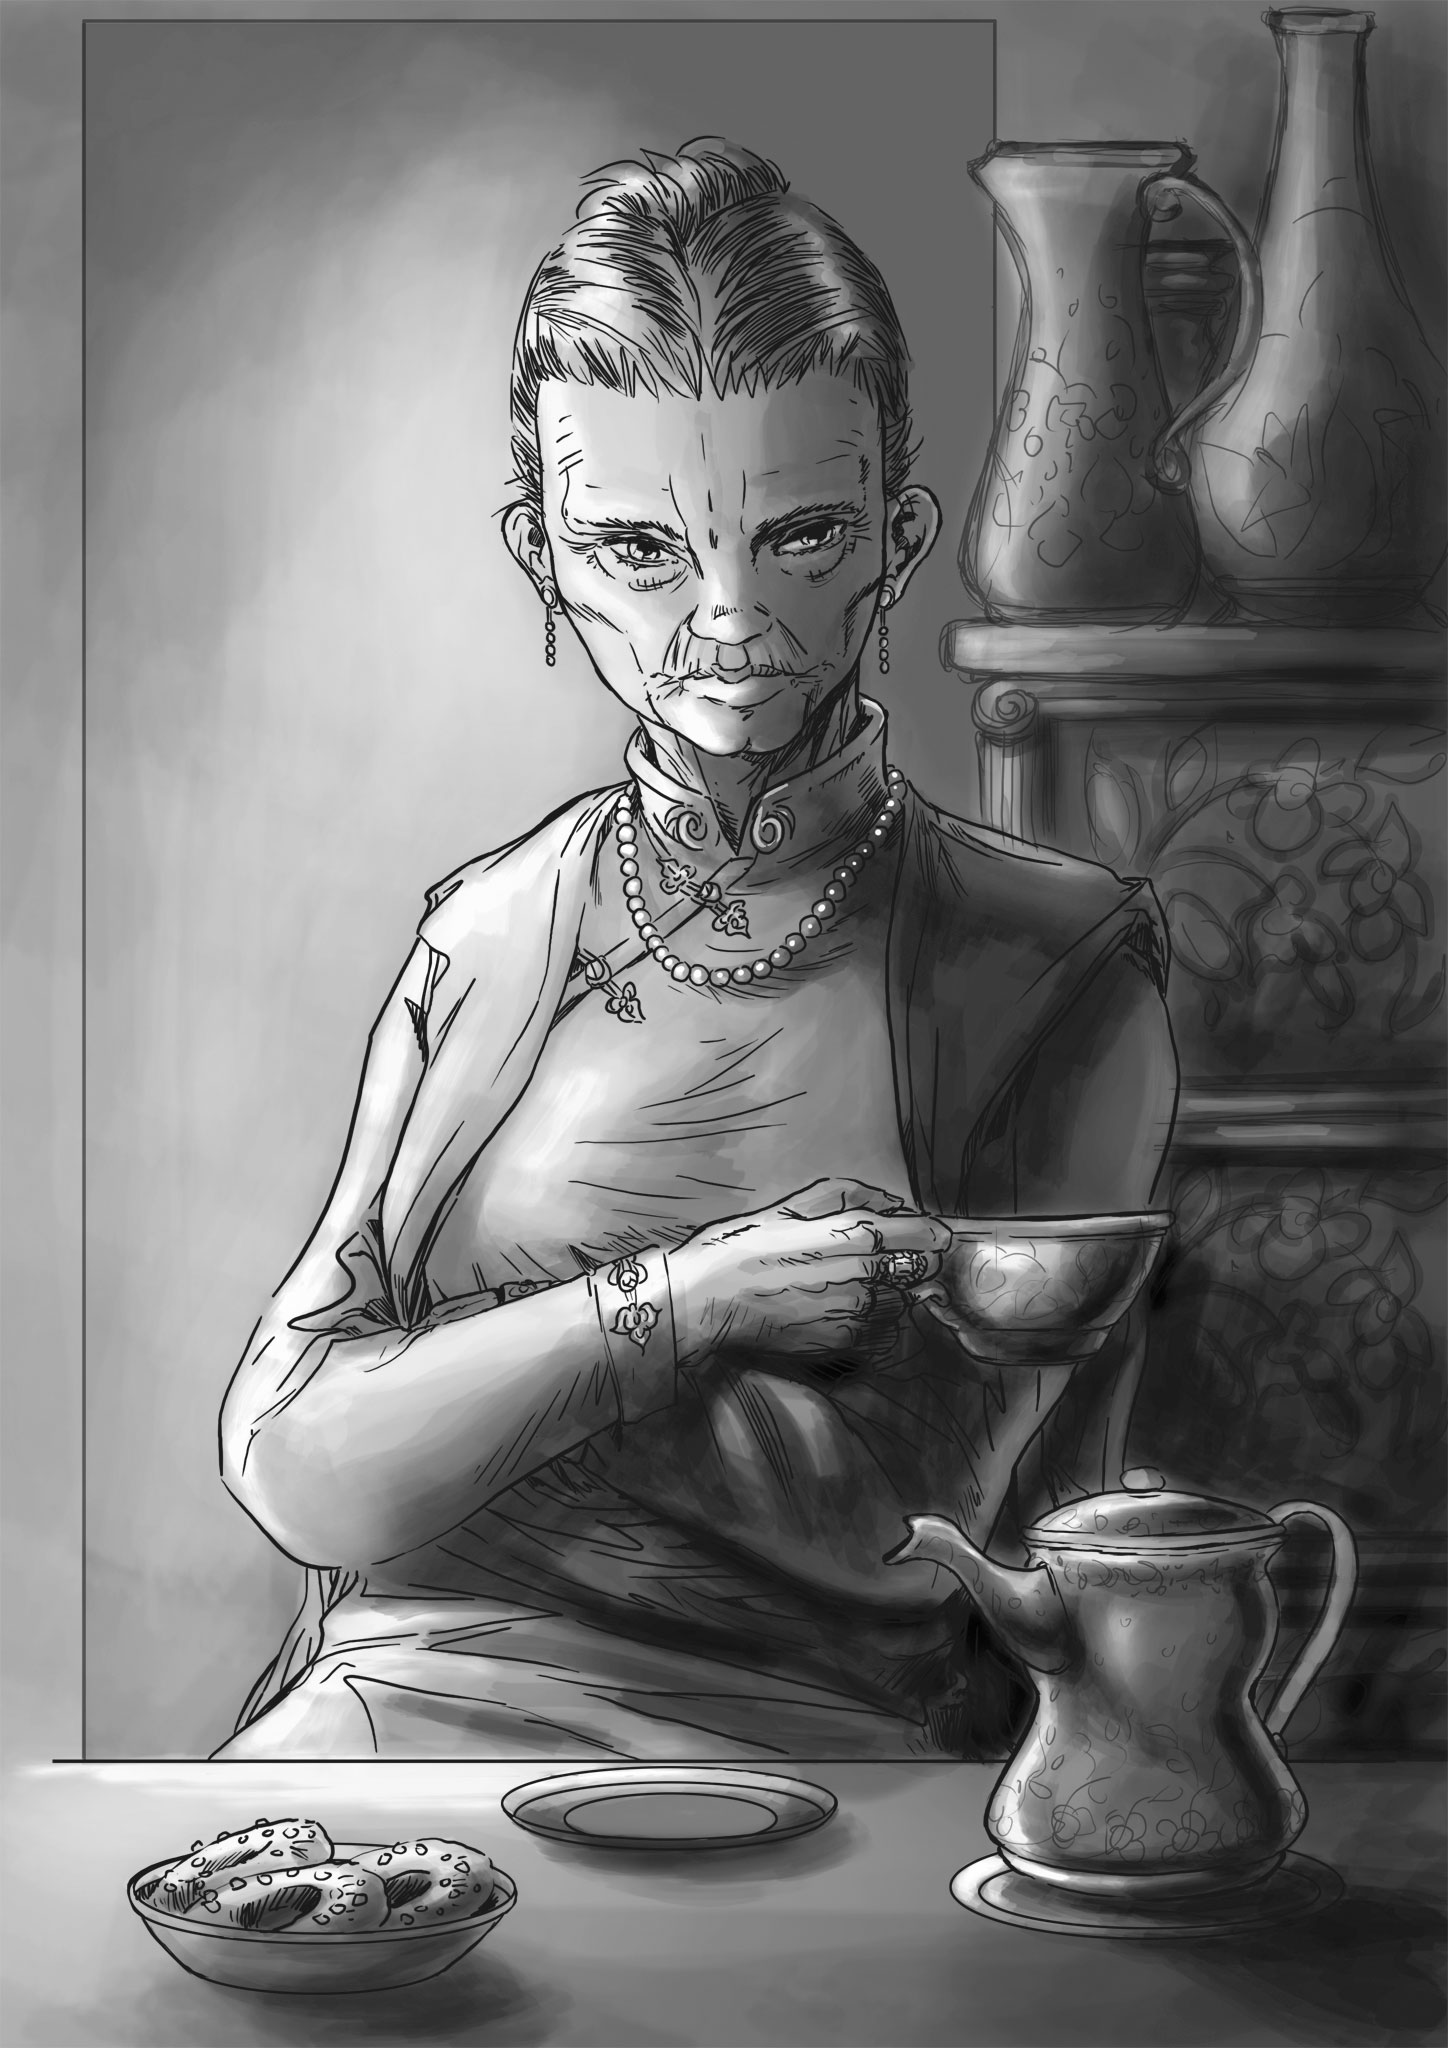 Une vieille femme dans une tenue chinoise buvant le thé